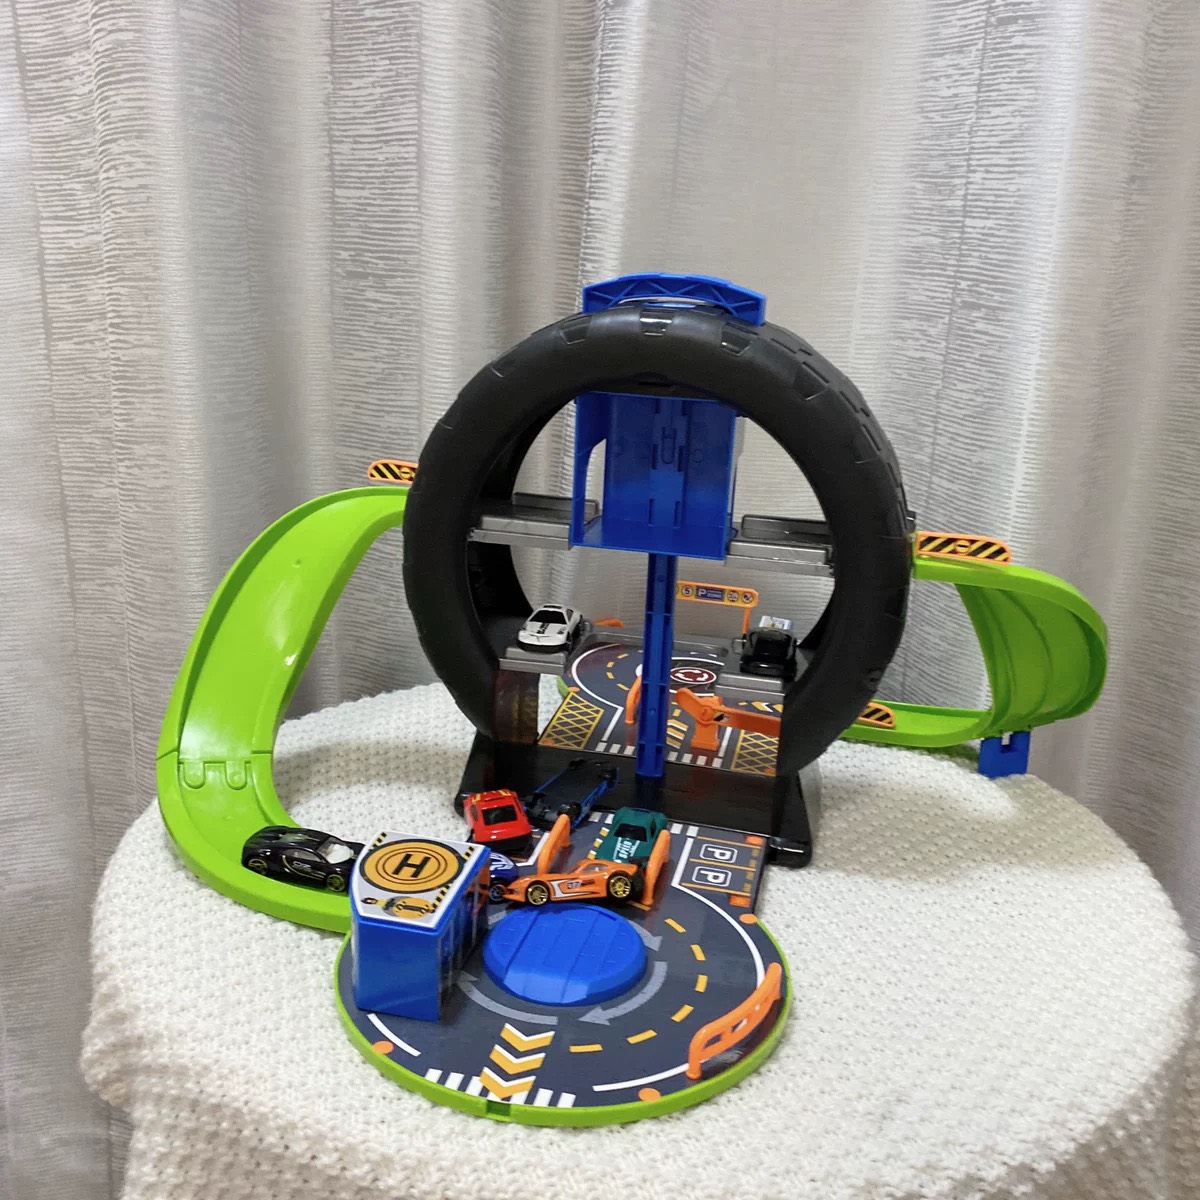 Đồ chơi mô hình lốp xe biến dạng lắp ráp thành gara đỗ xe cỡ lớn có đường đua kèm thang nâng tự điều khiển cho bé